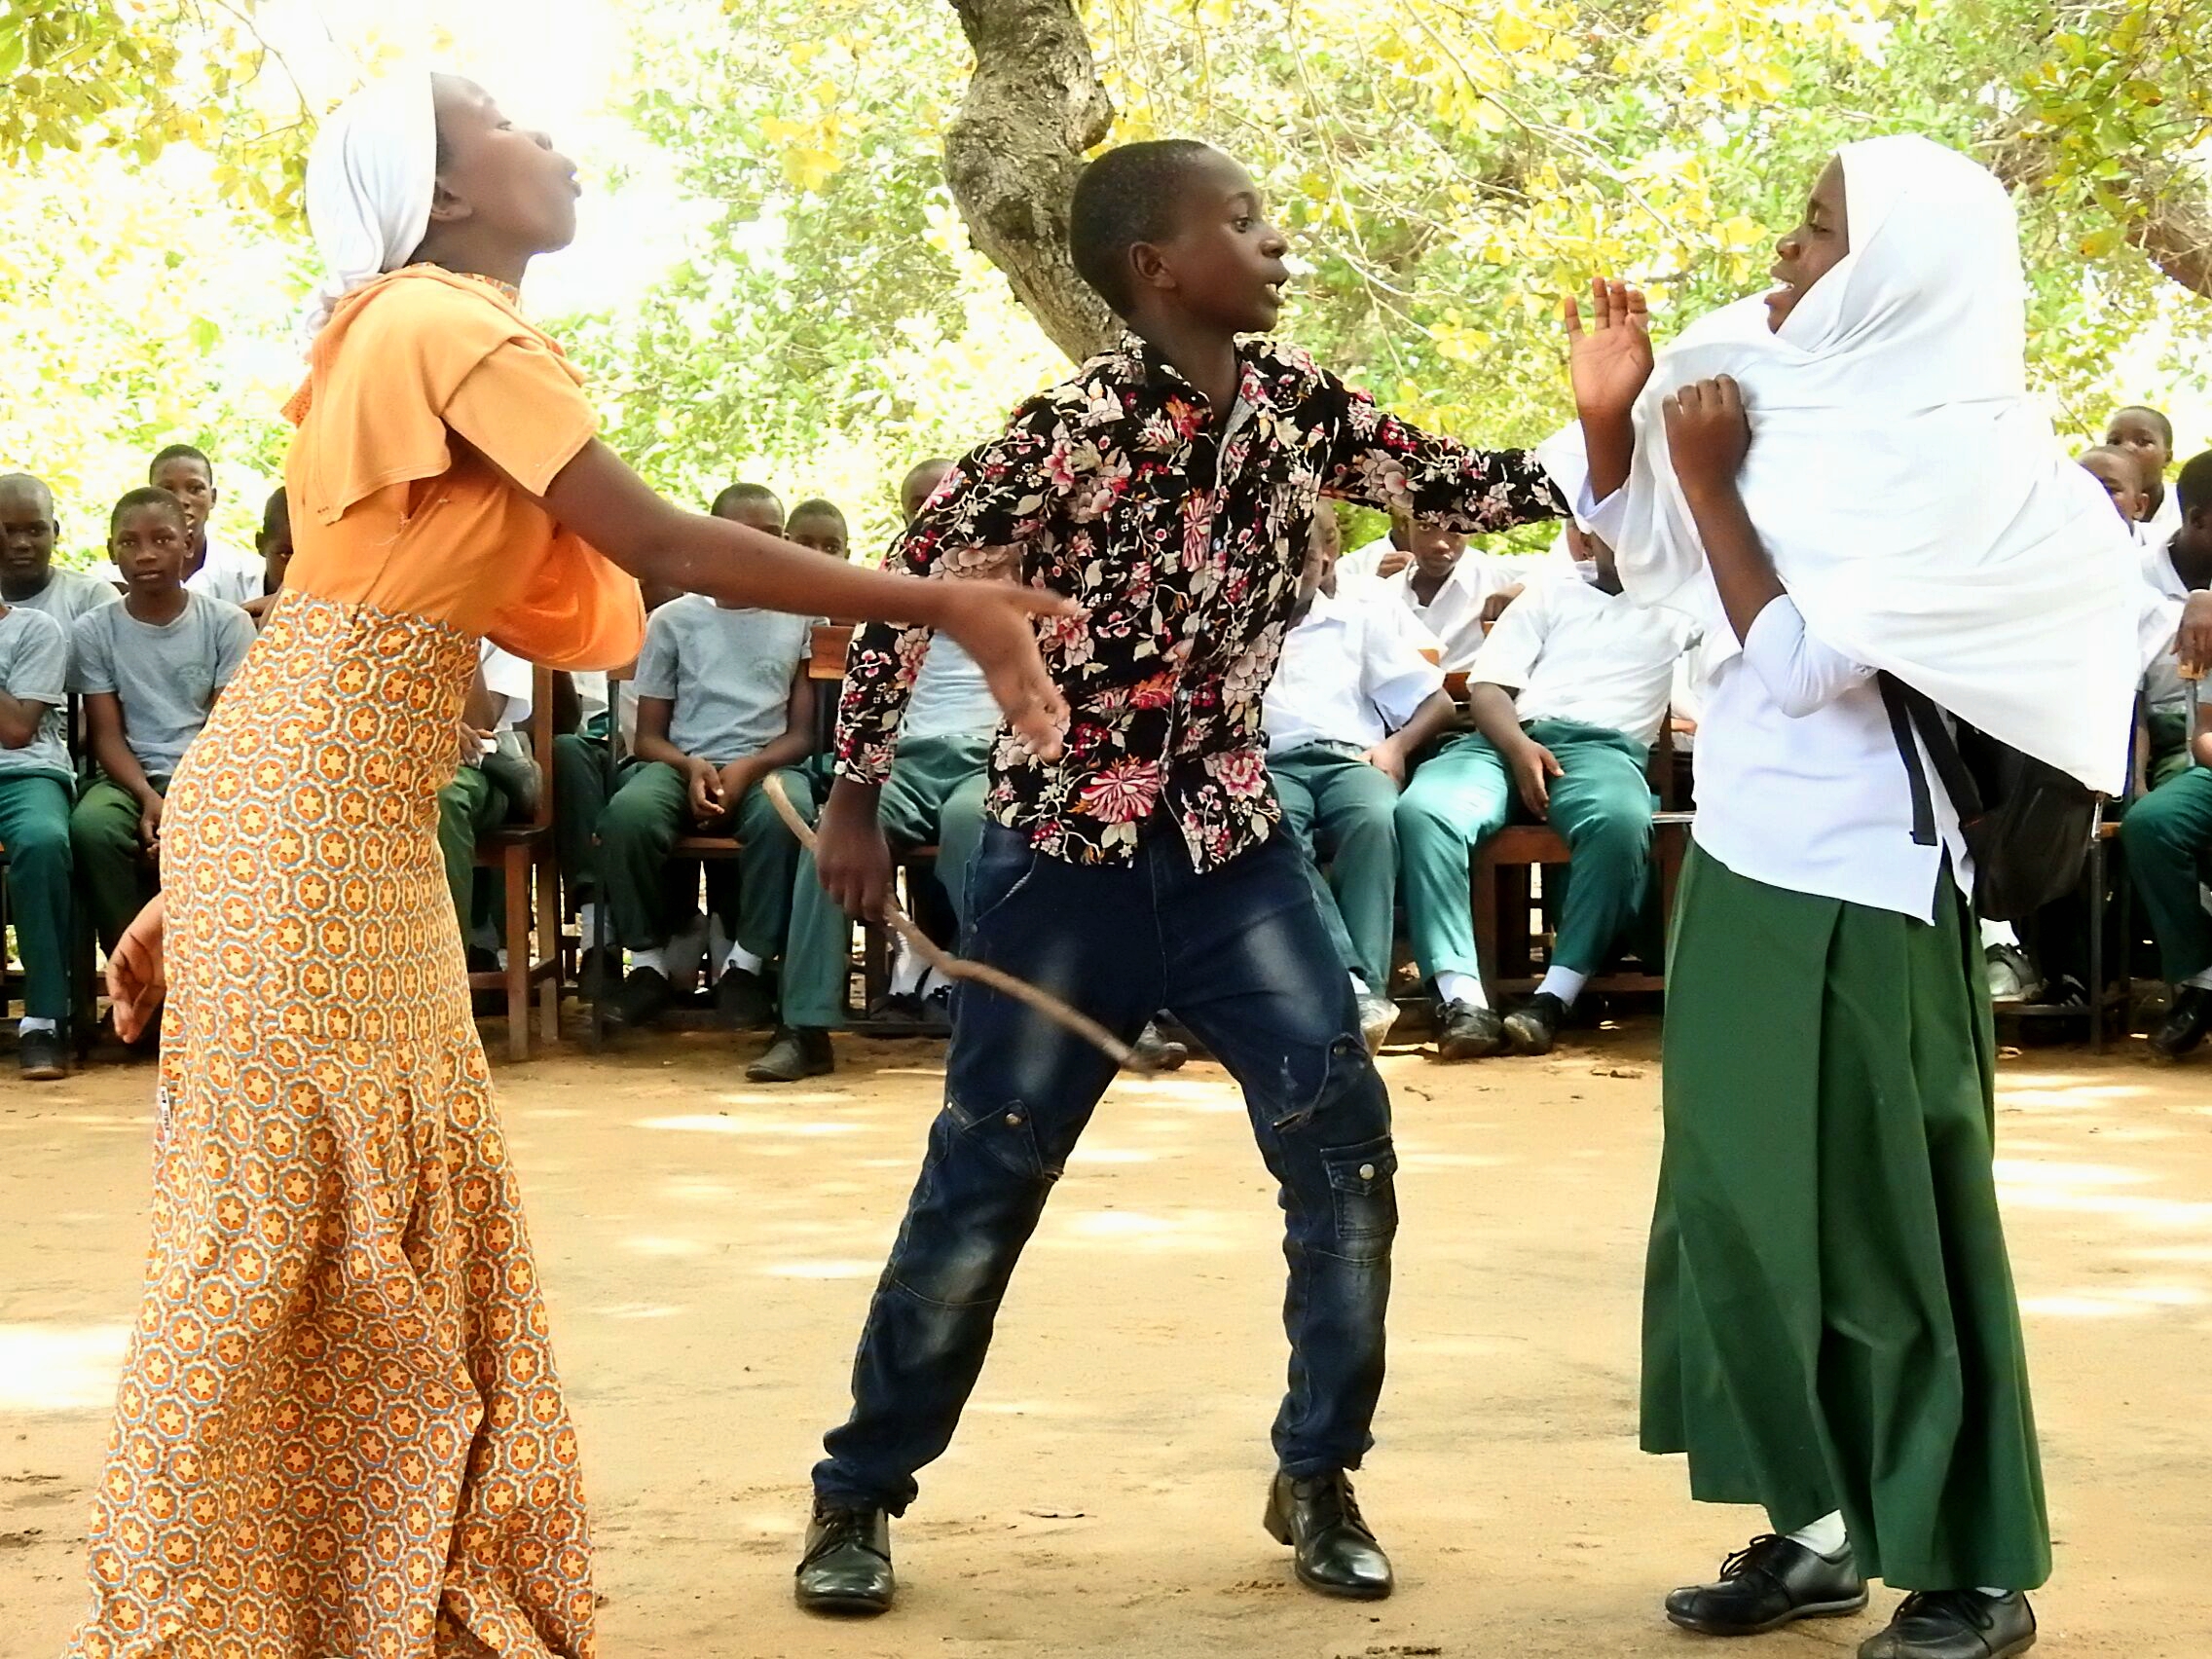 Tansanialaiset koululaiset näyttelemässä.